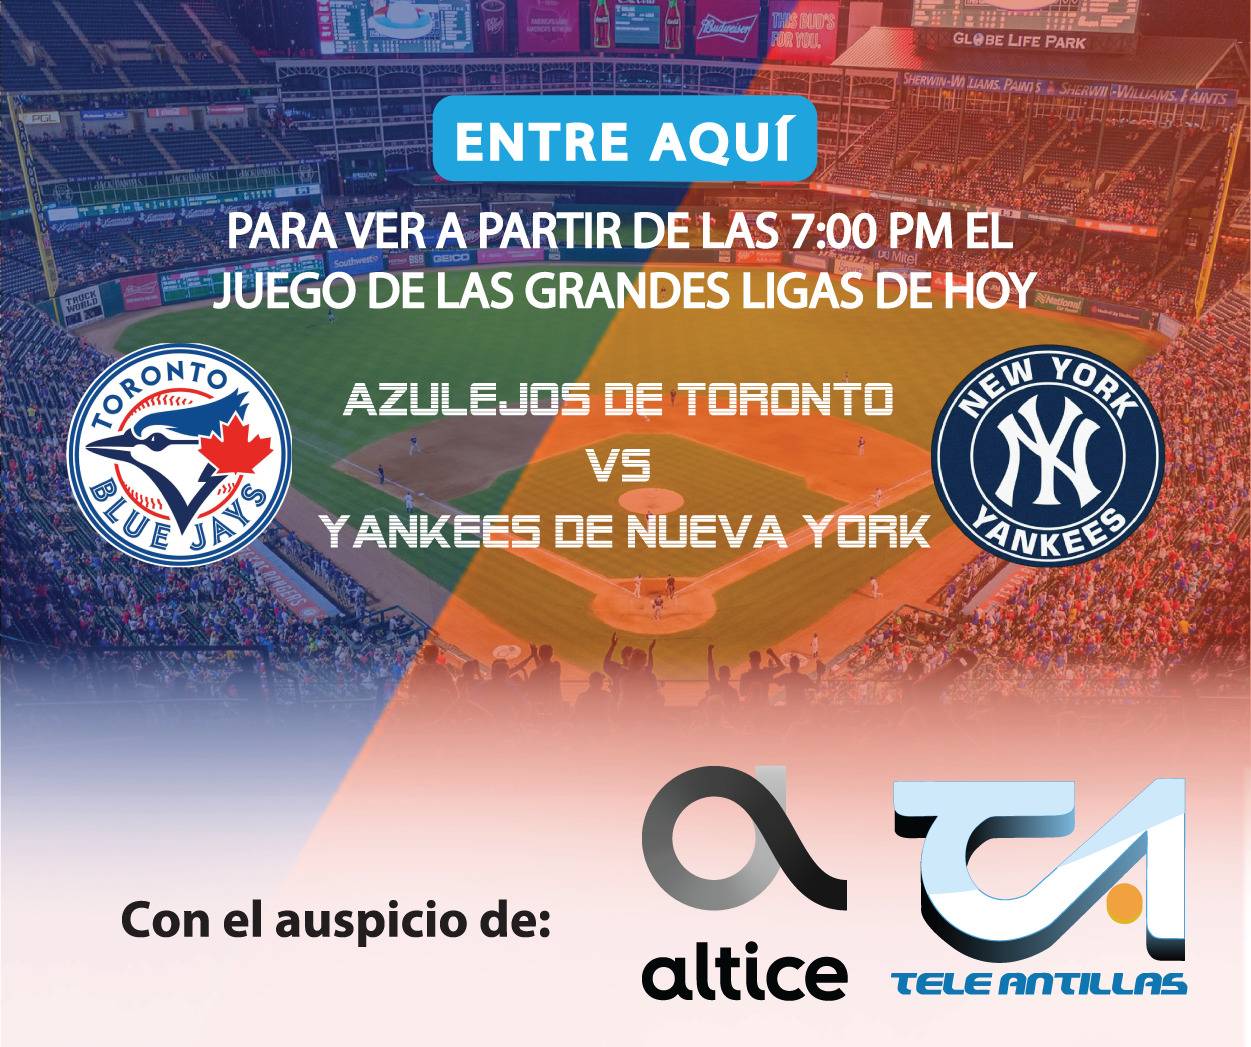 EN VIVO: Azulejos de Toronto vs Yankees de Nueva York